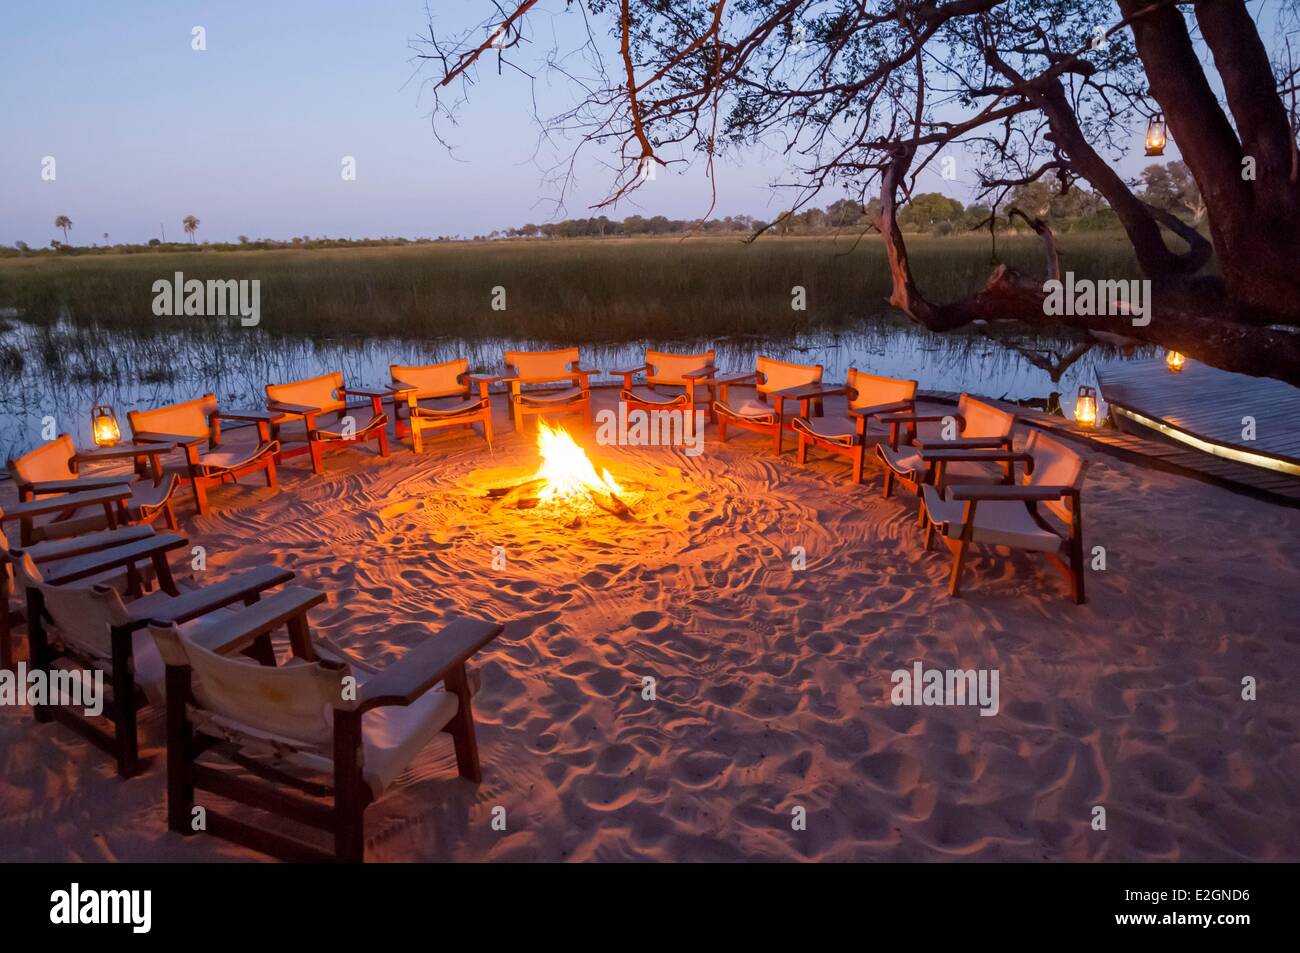 Distrito noroeste de Botswana Delta del Okavango Abu Lodge boma o lugar de reunión al aire libre por el fuego Foto de stock